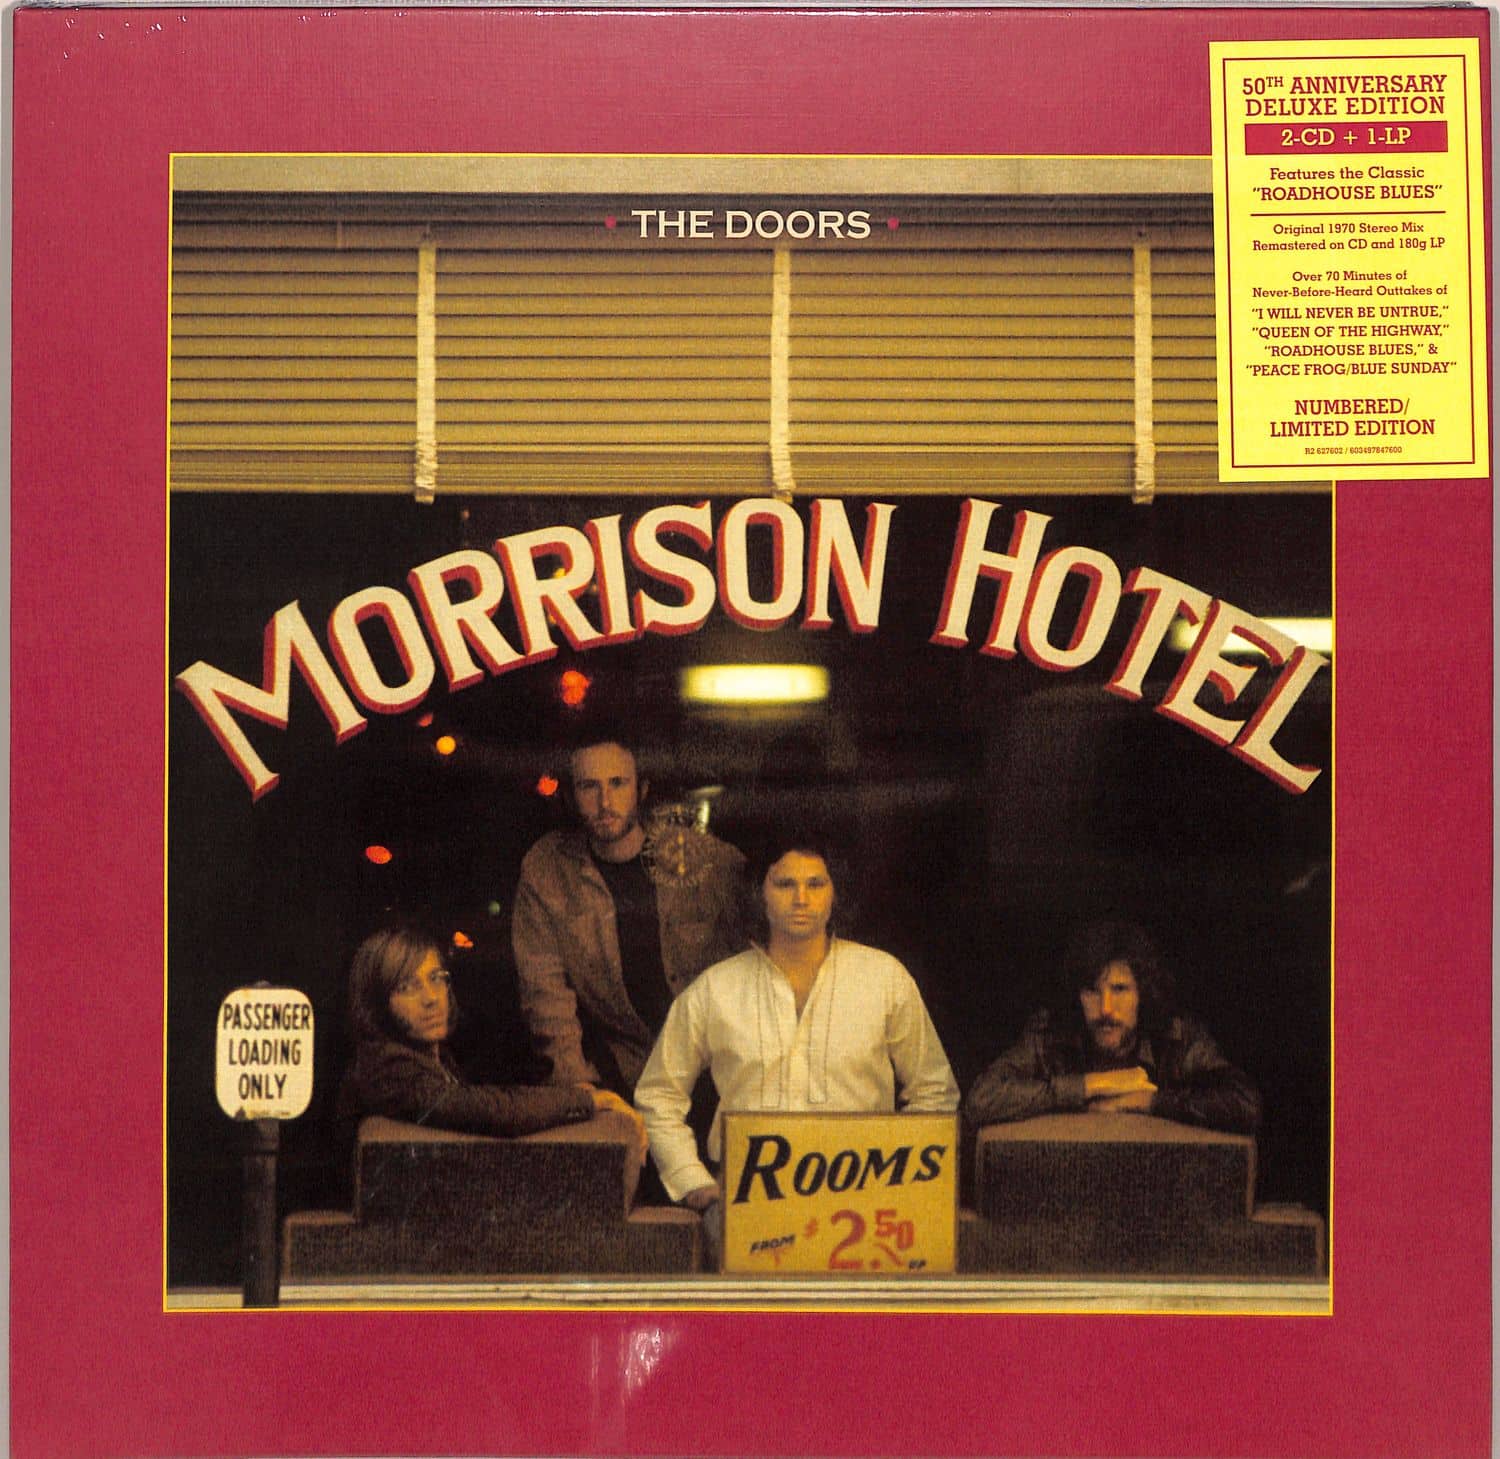 The Doors - MORRISON HOTEL 